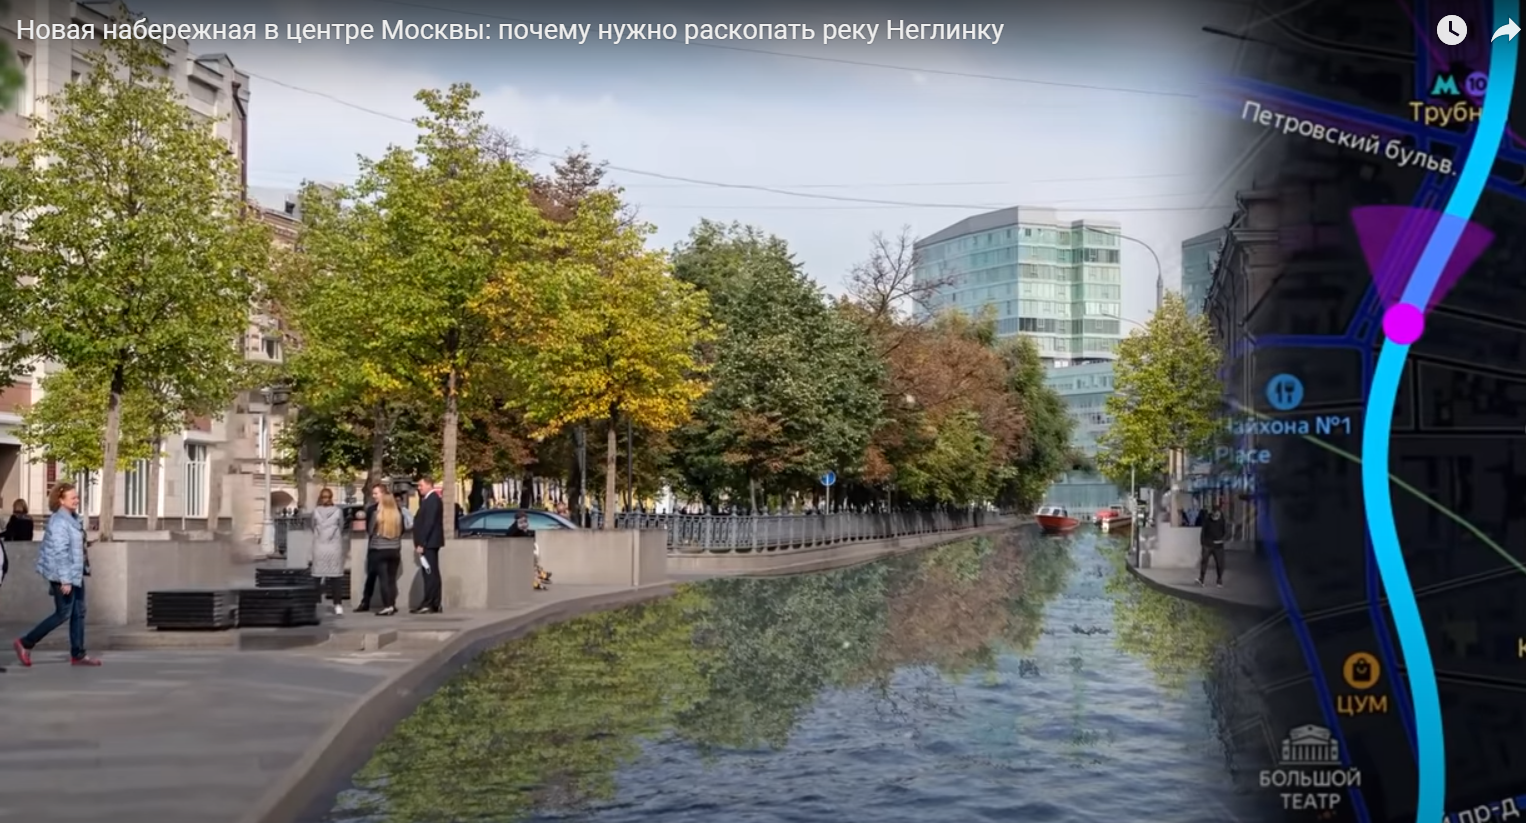 Идея Варламова откопать реку Неглинку не вызвала восторга у москвичей